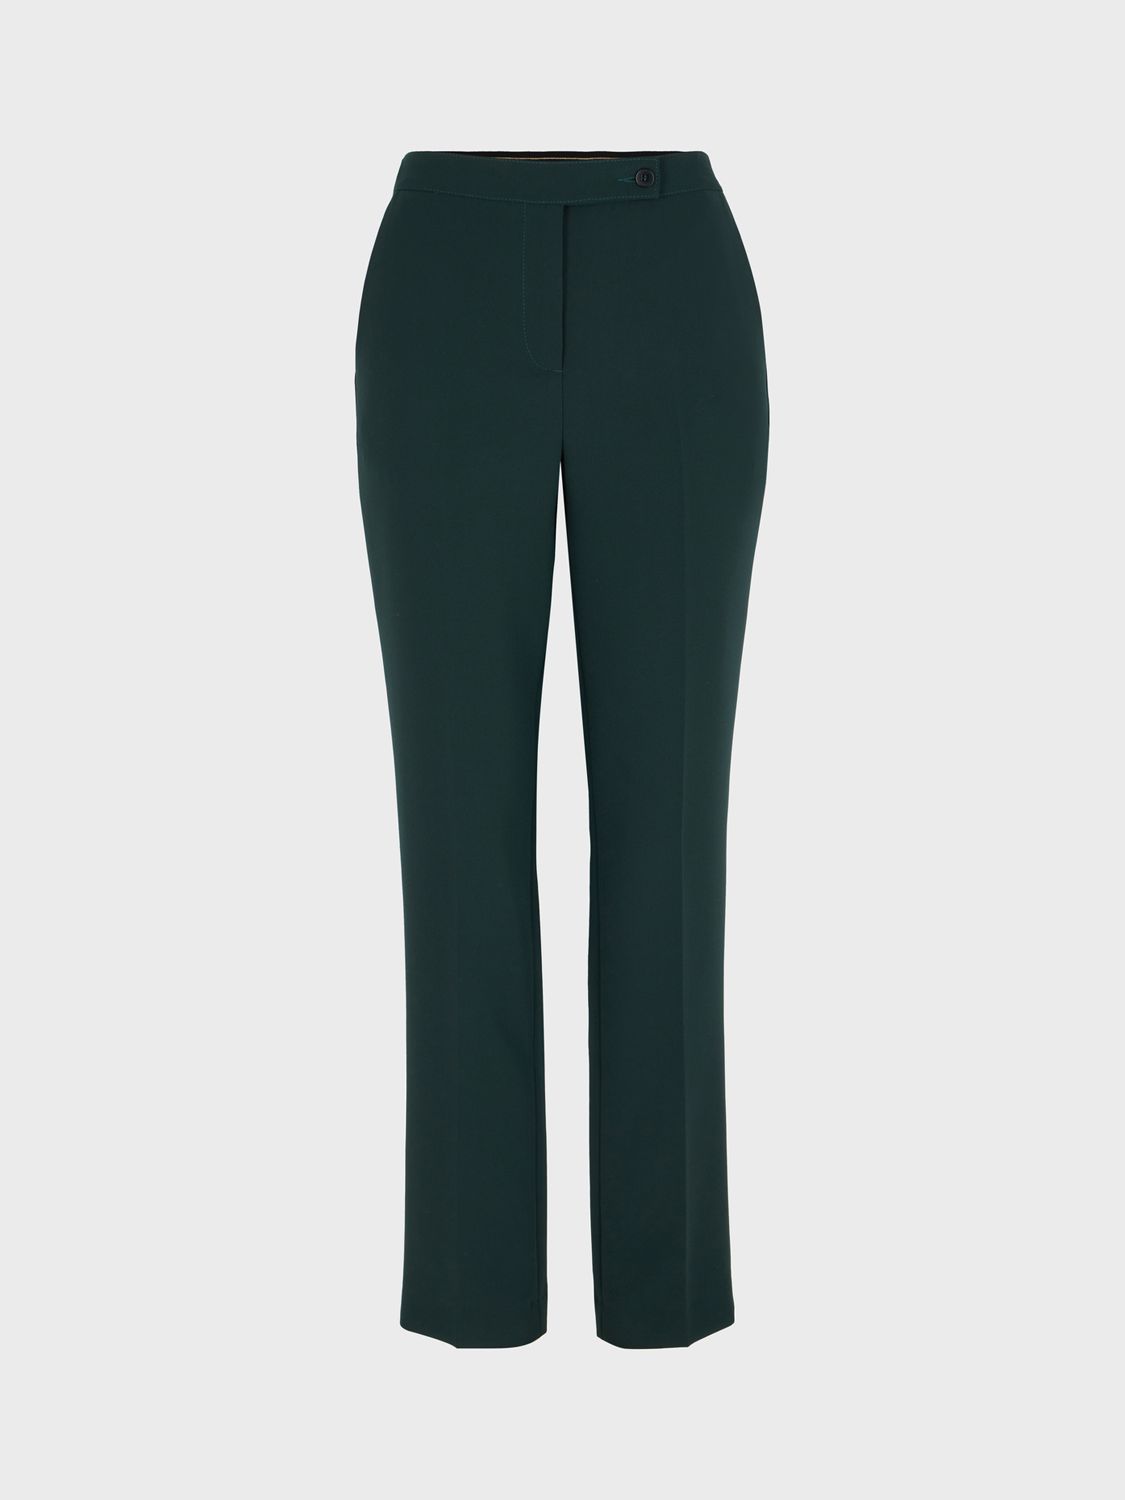 Gerard Darel Edgard Slim Tailored Trousers, Dark Green